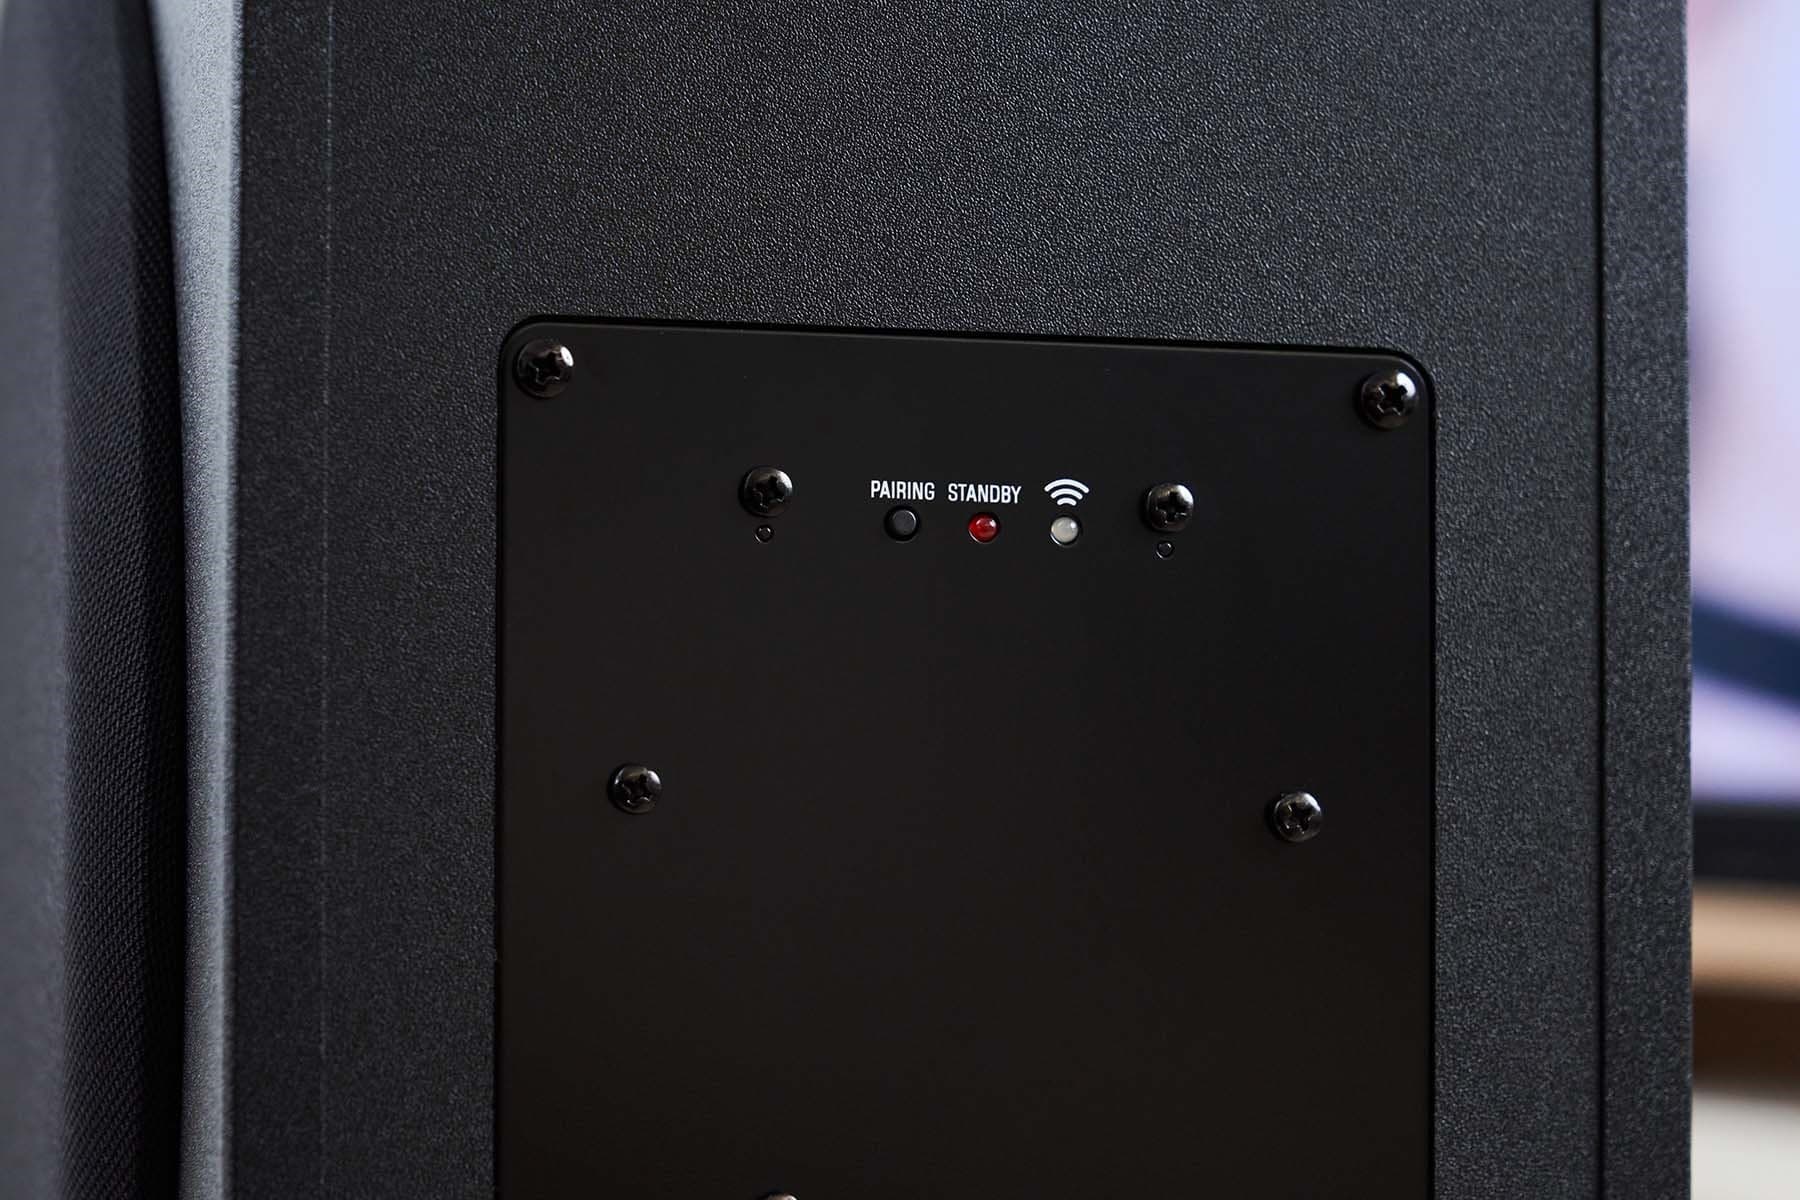 超低音揚聲器依然以便於連接的無線計，因，背面無一傳輸介面，乾淨的機背僅規劃了單一配對鍵和指示燈，當超低音揚聲器連接到 SR-B40A Soundbar 時，右方指示燈便會亮起白燈。